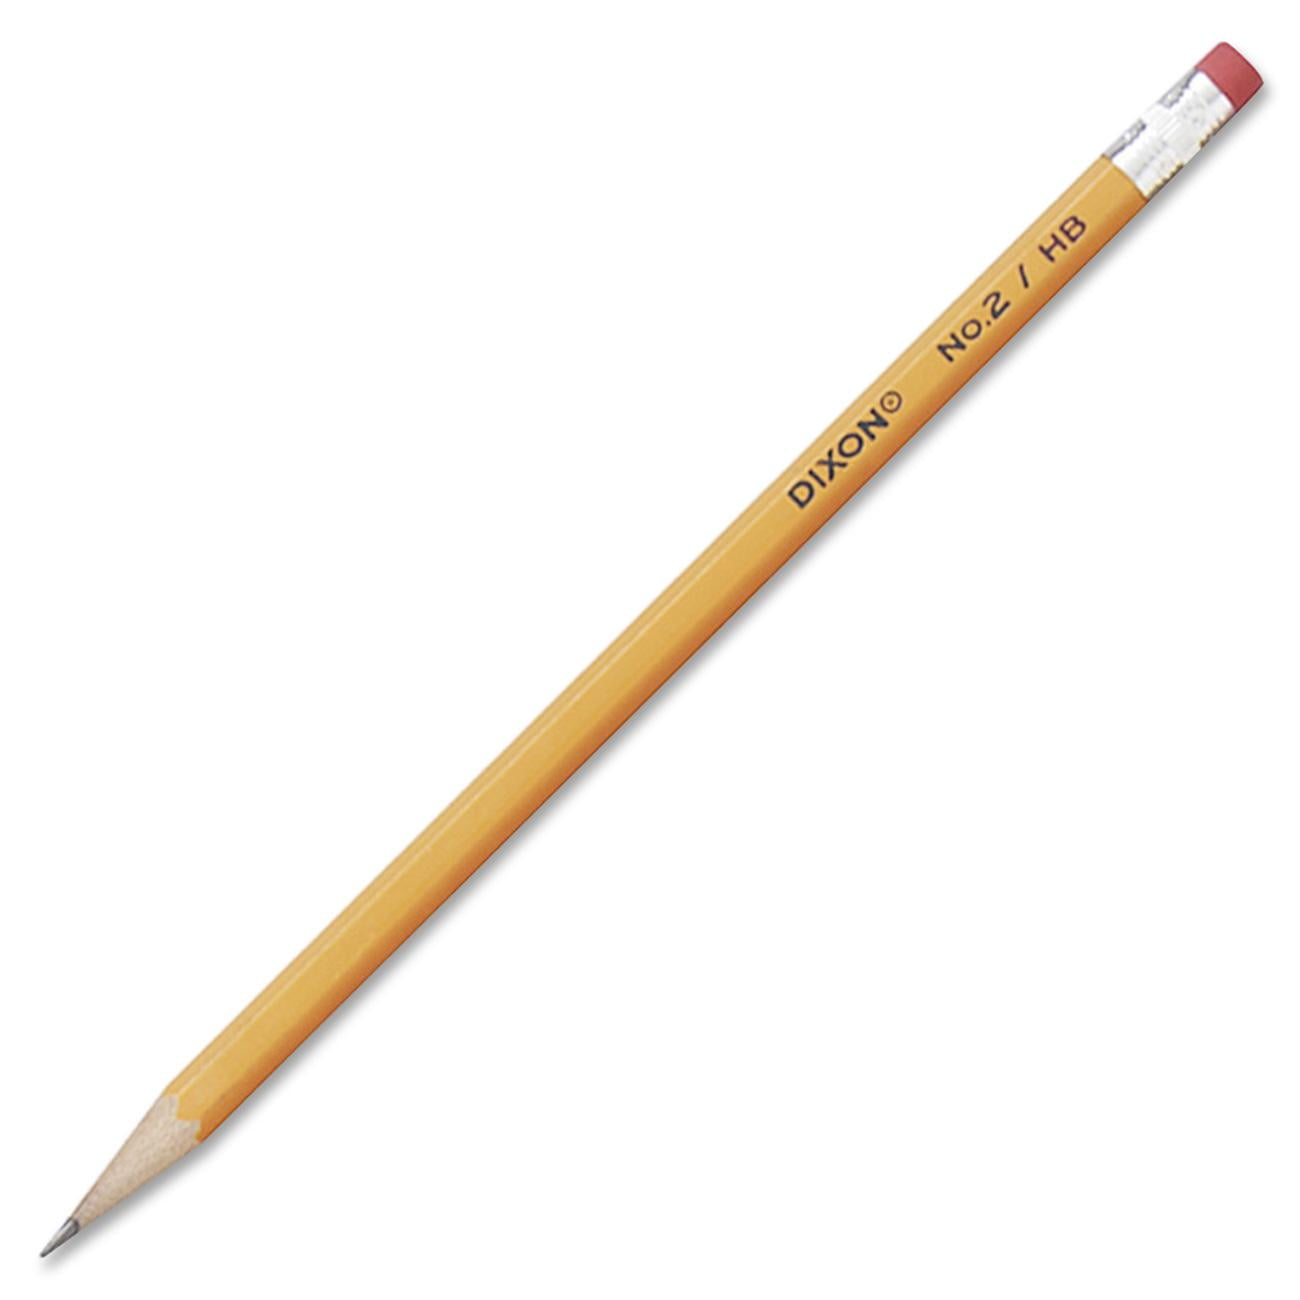 Pencil2d. Five Yellow Pencils.